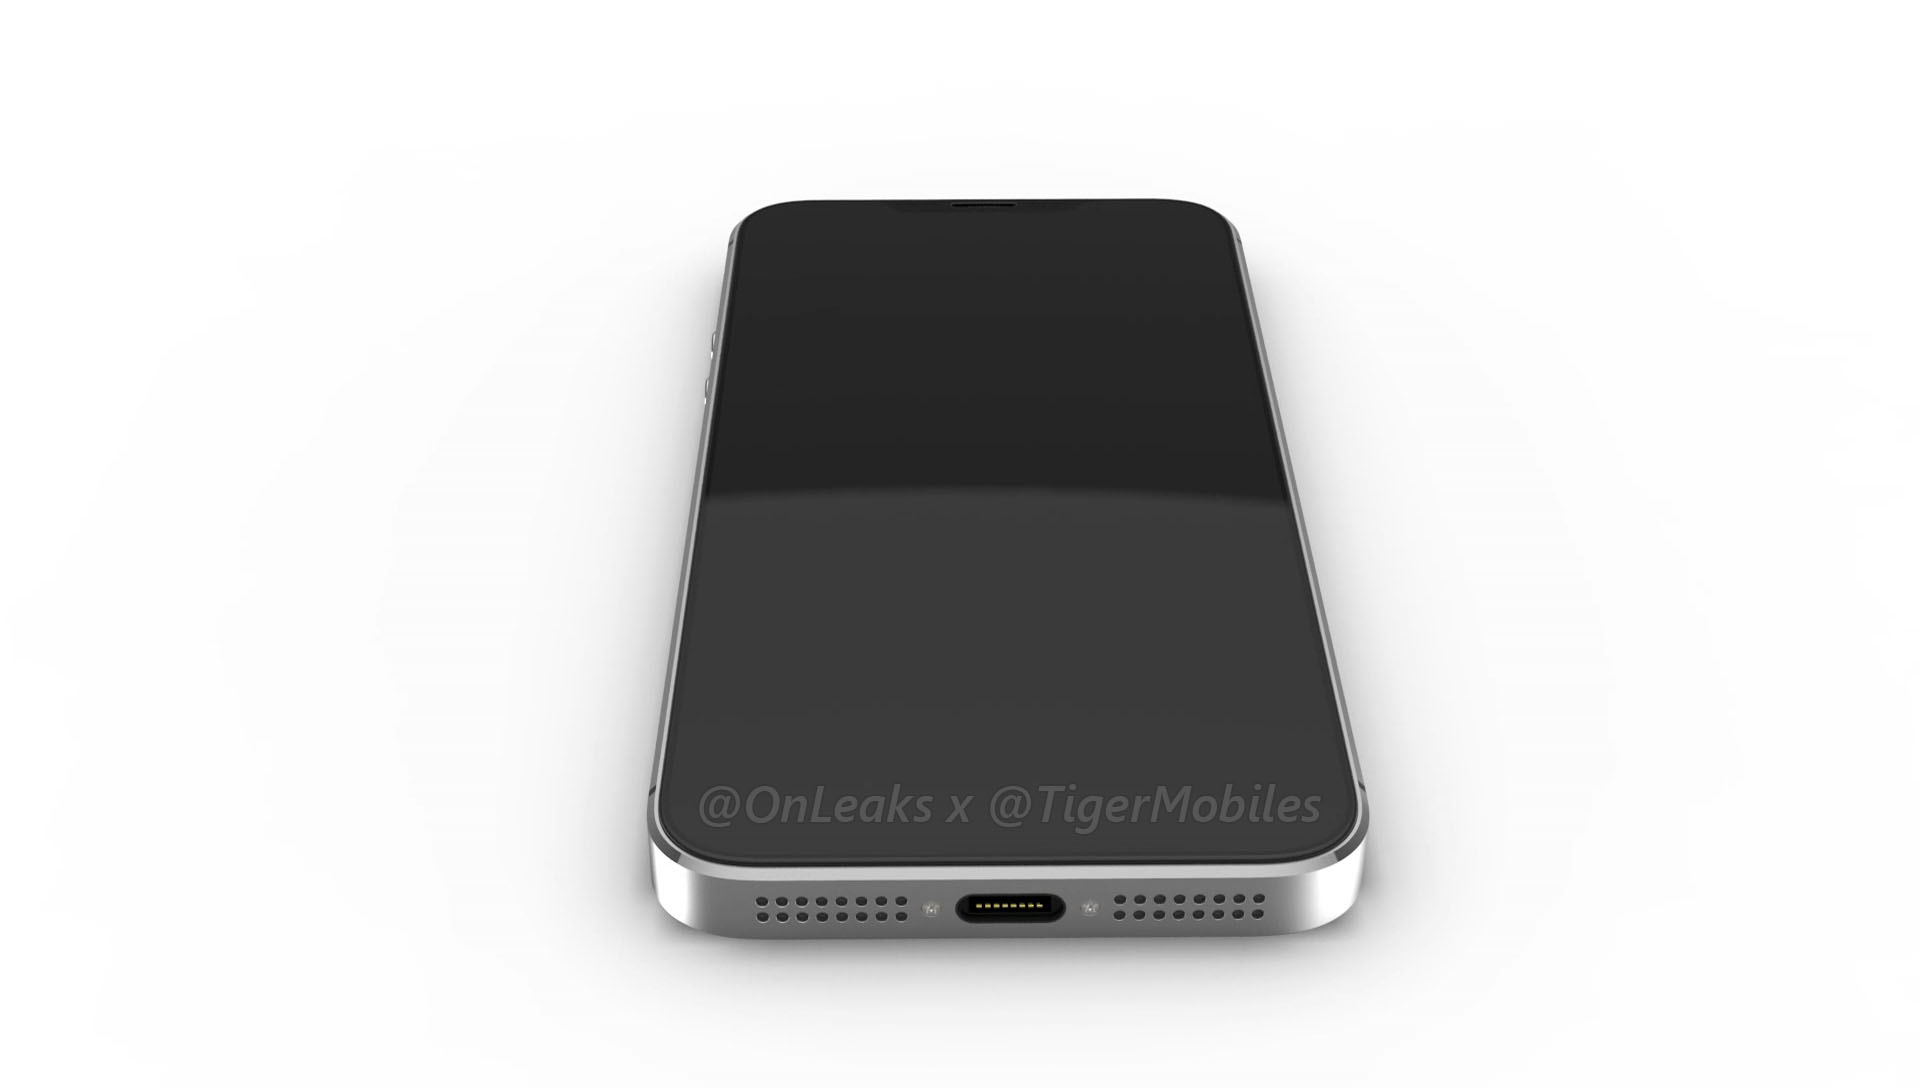 Hé lộ toàn bộ thiết kế
truyền thống tuyệt đẹp của iPhone SE 2 qua bộ ảnh render mới
rò rỉ